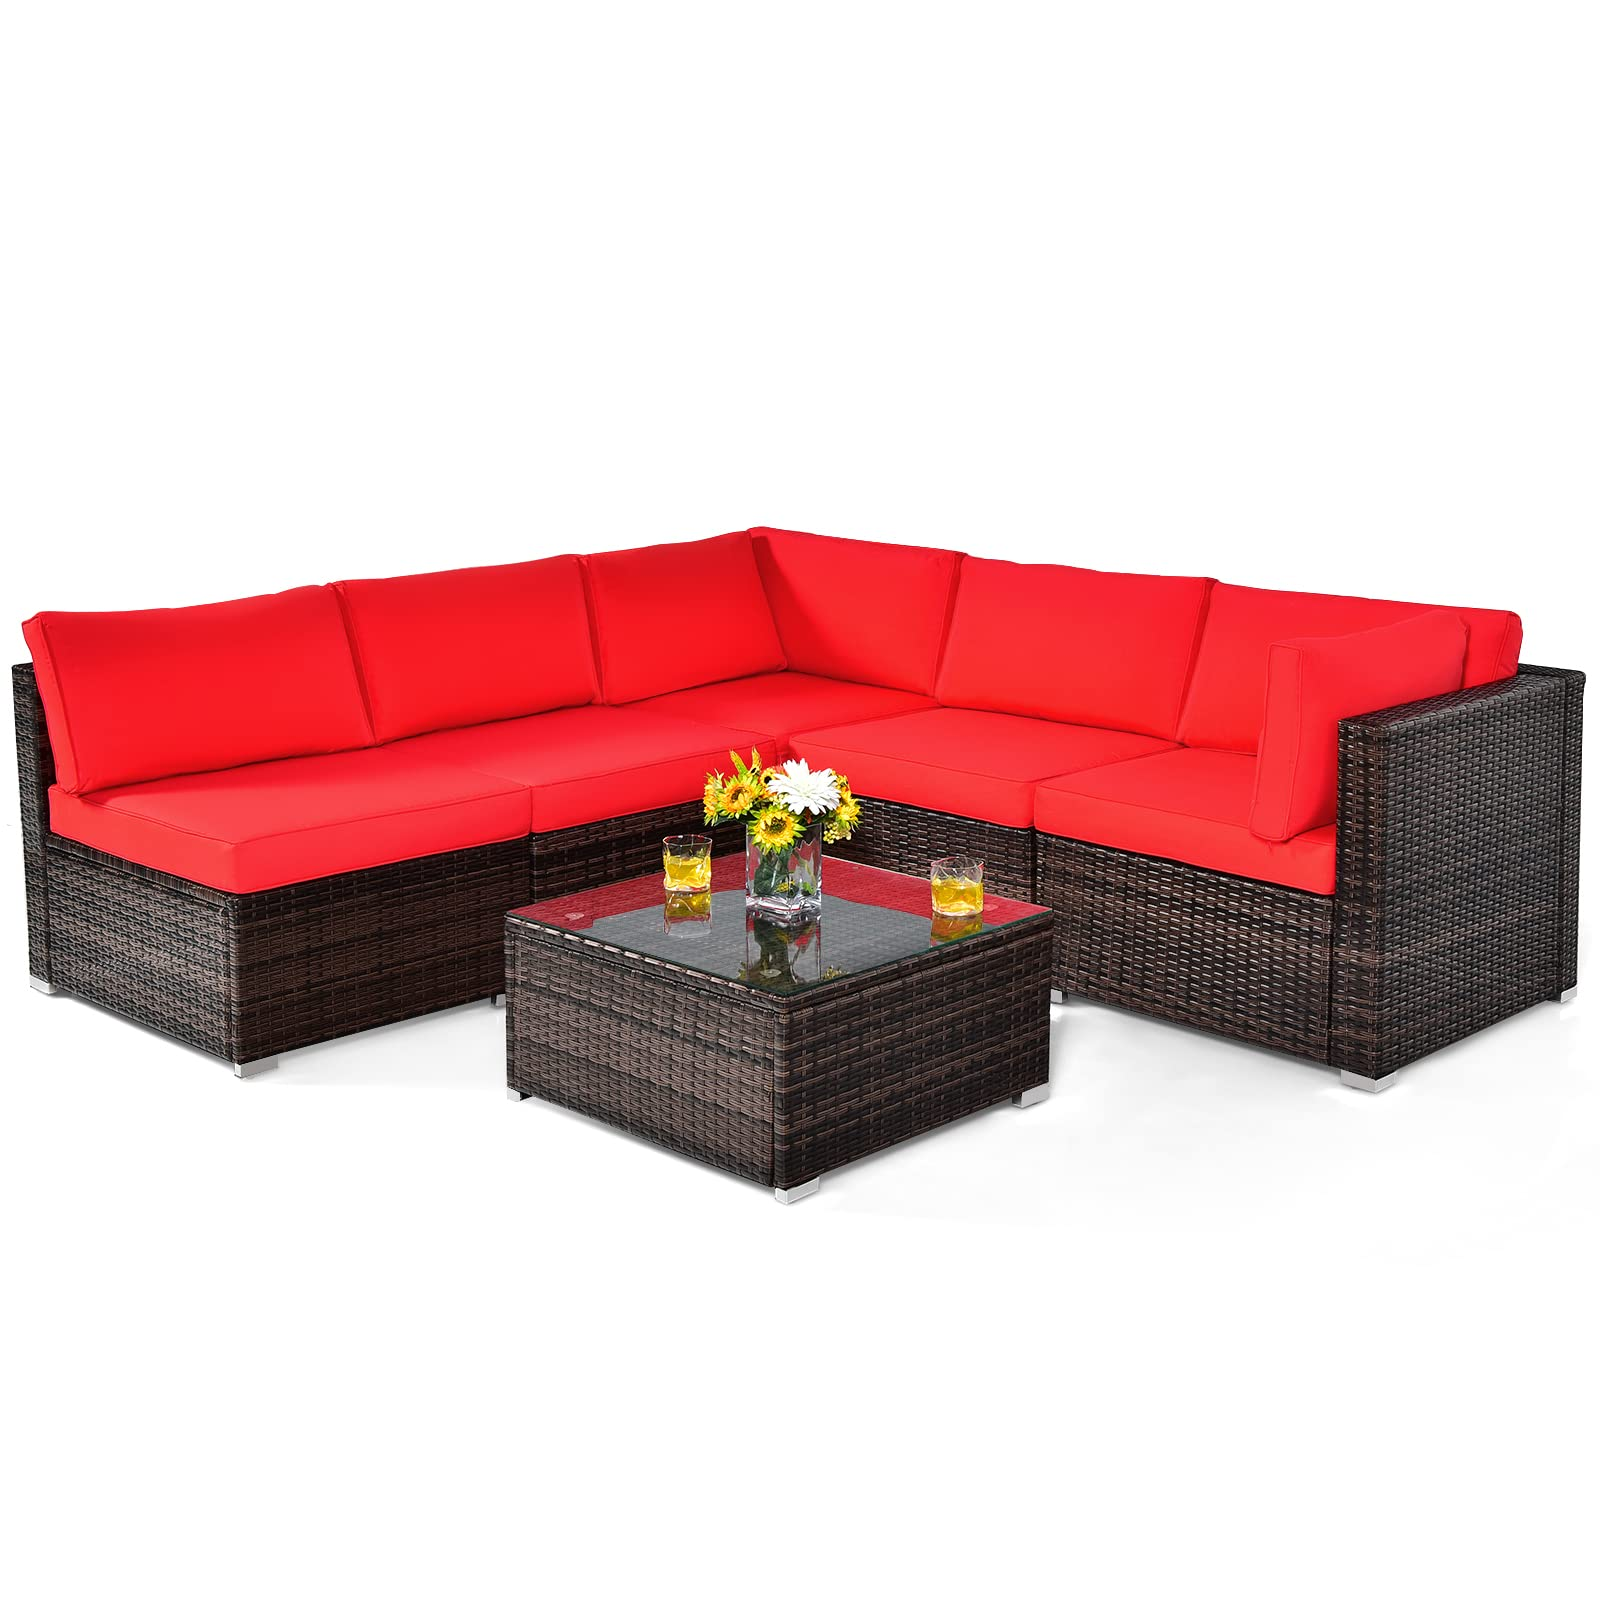 6 Pieces Patio Furniture Set, Red - Tangkula